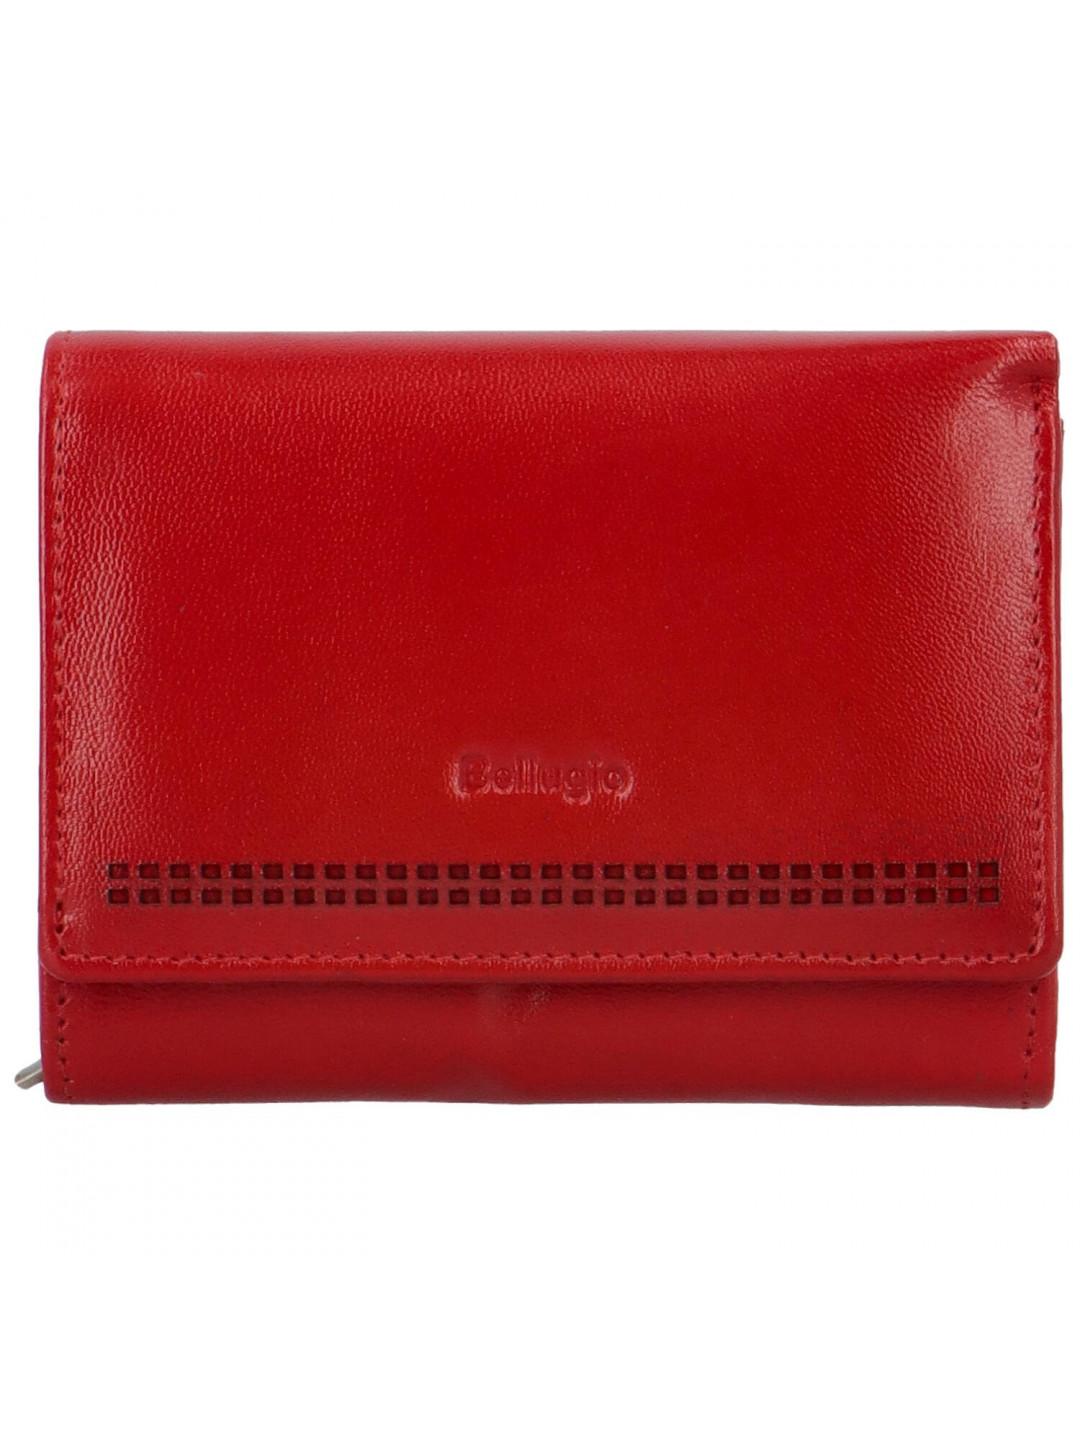 Dámská kožená peněženka červená – Bellugio Glorgia